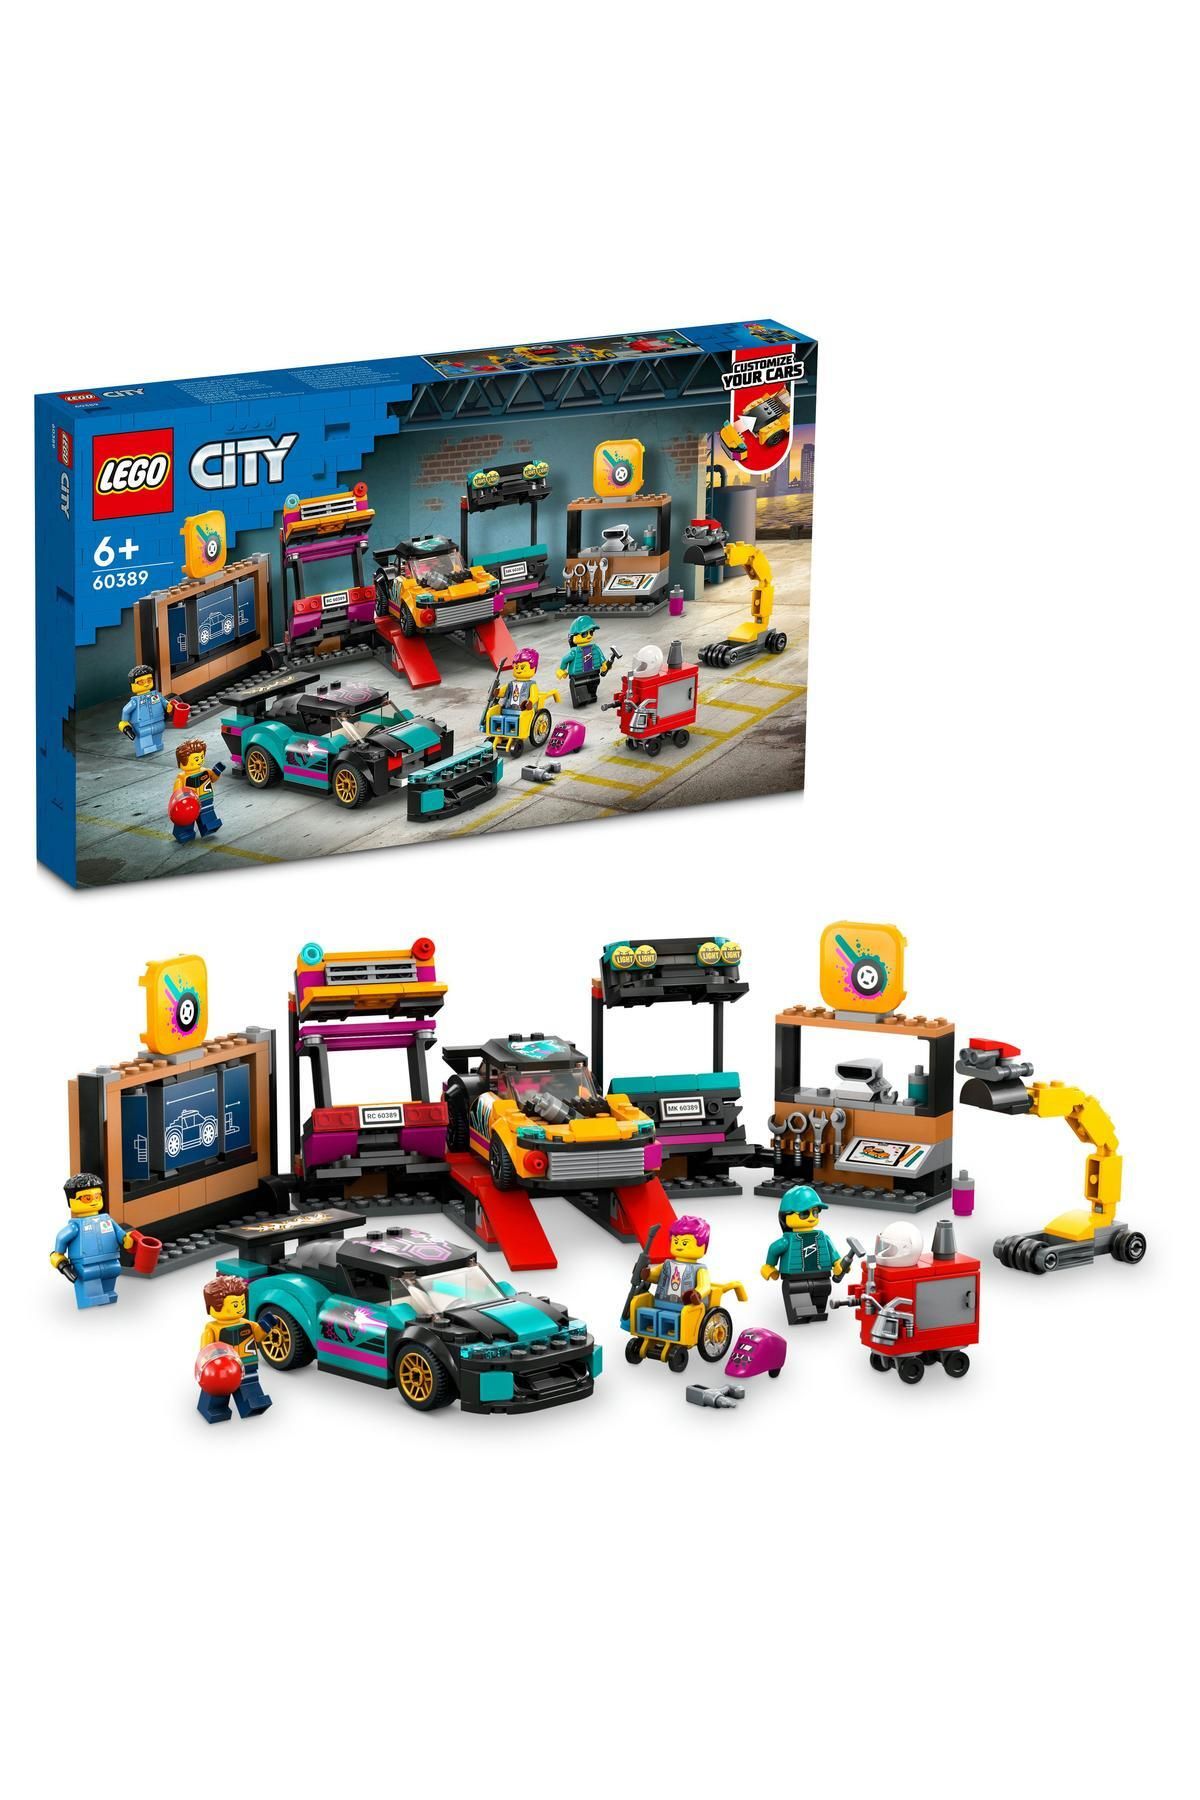 LEGO ® City Araç Modifiye Atölyesi 60389 - 6 Yaş ve Üzeri Çocuklar için Yapım Seti (507 Parça)